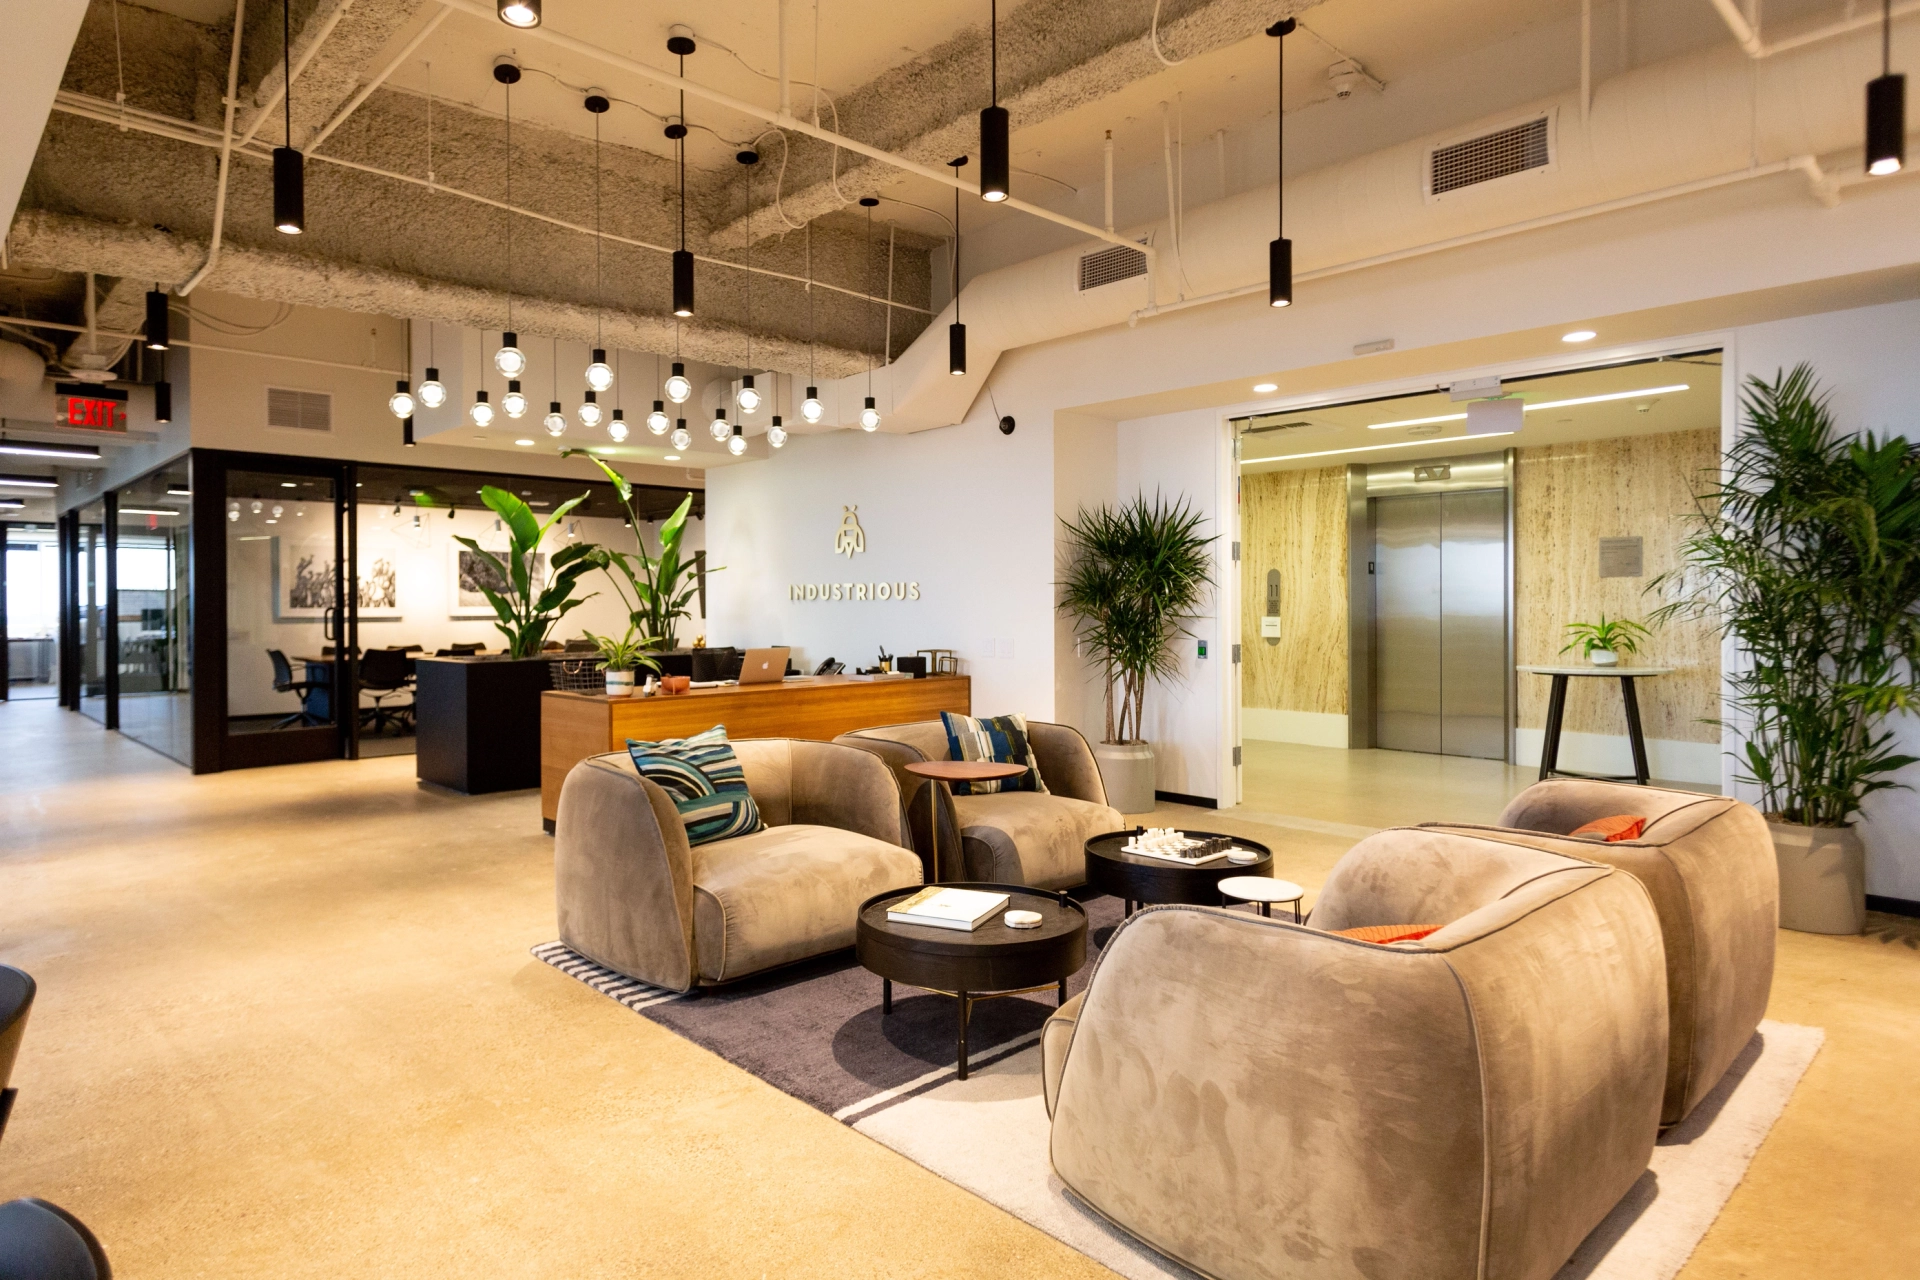 De werkruimtelobby van een modern kantoor in West Hollywood met banken en planten.